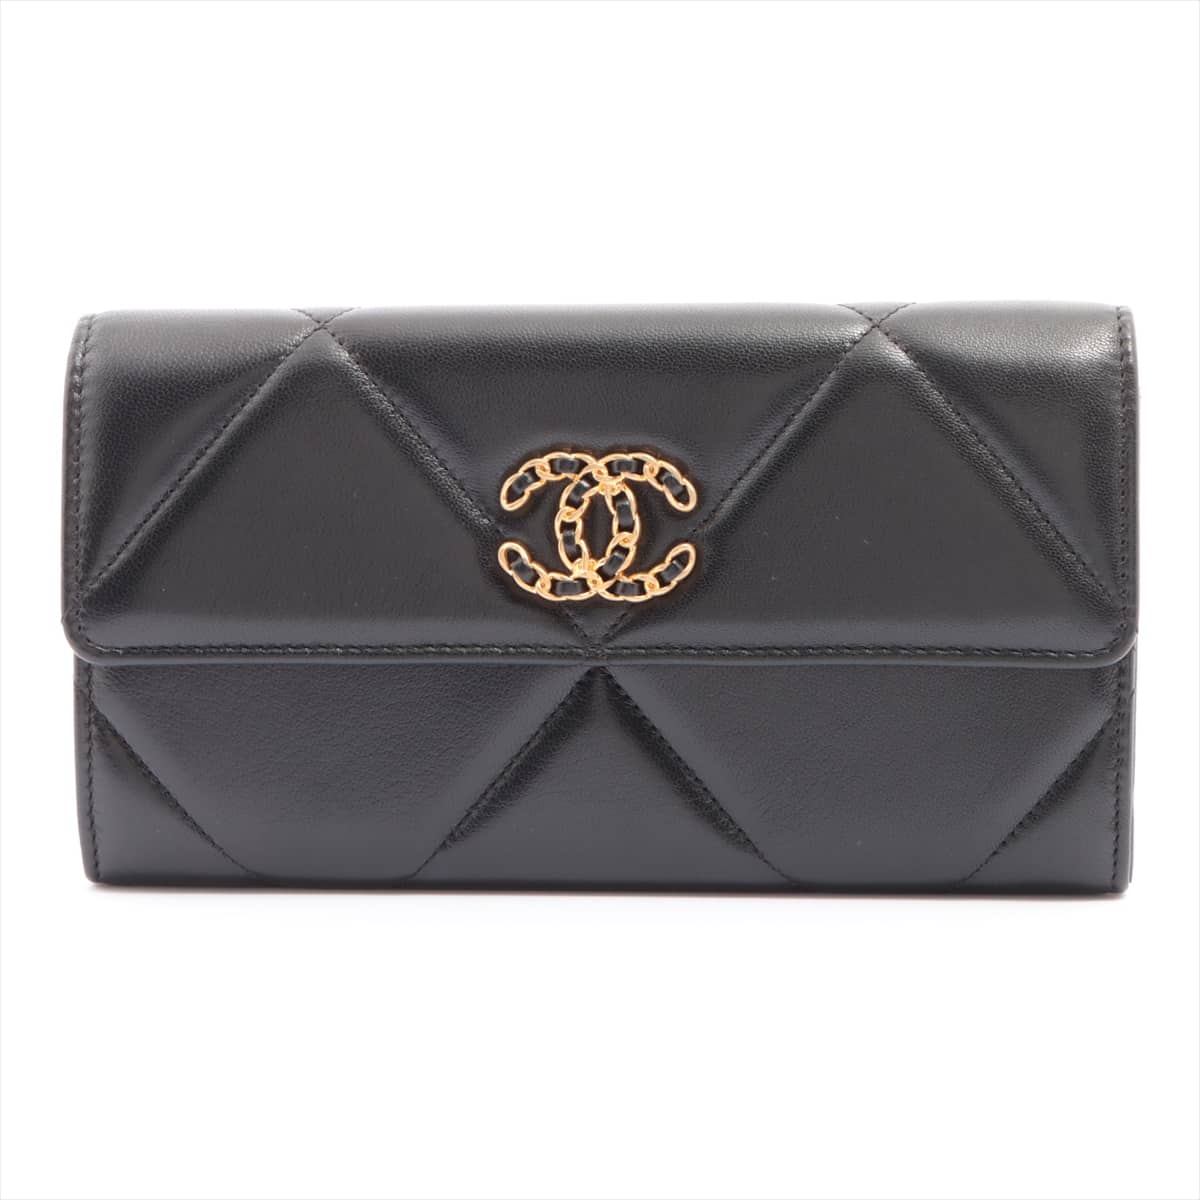 Chanel Matelasse Lambskin Wallet Black Gold Metal fittings 31st